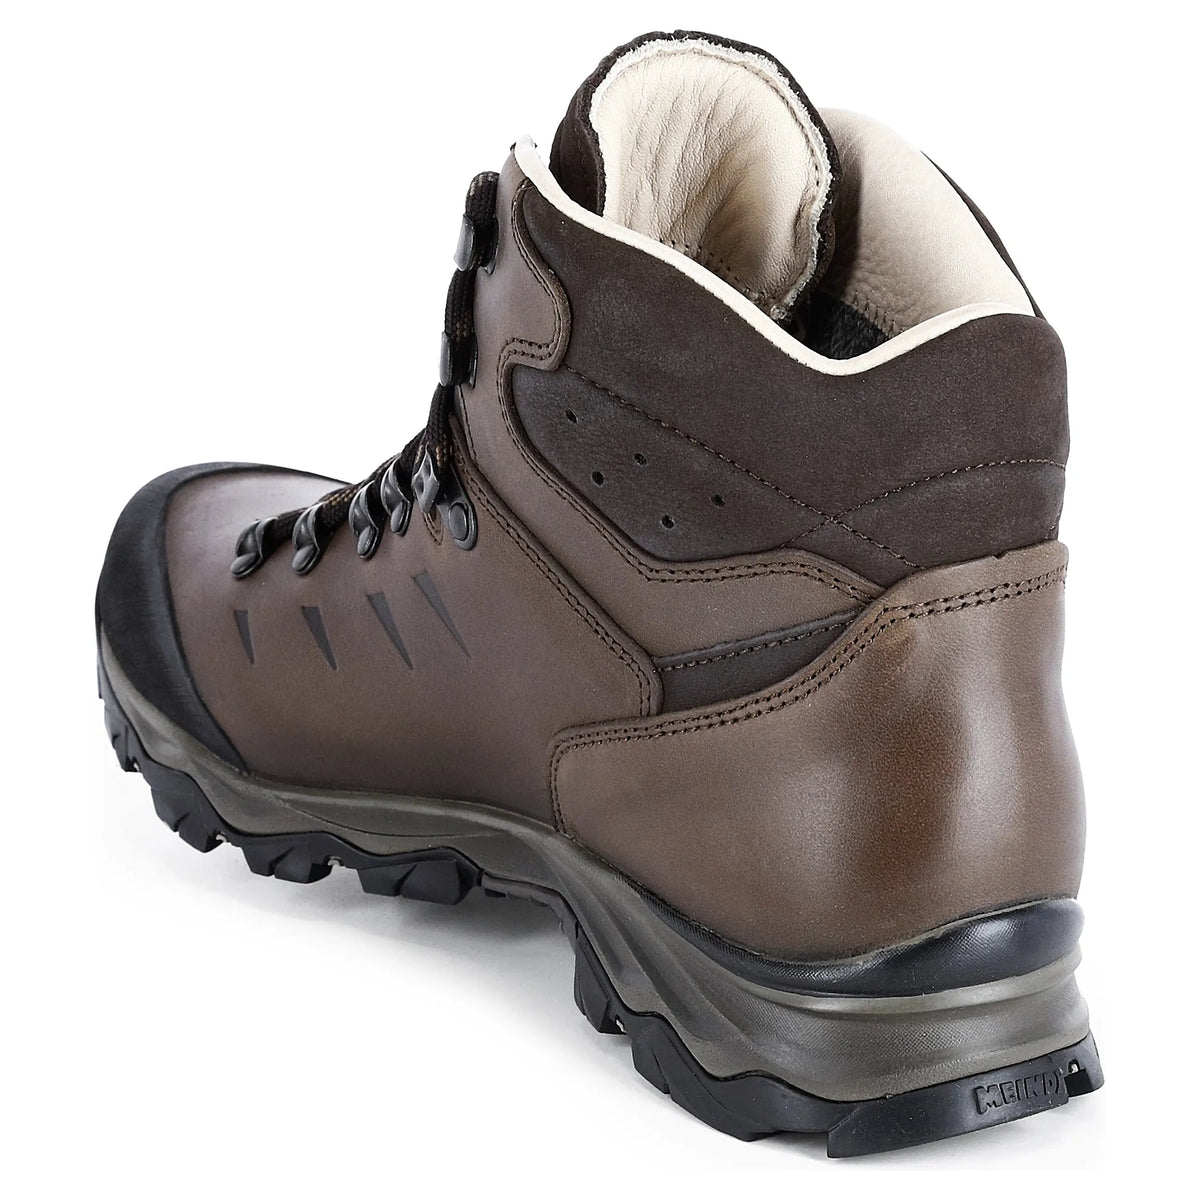 Meindl Chile GTX Walking Boots - Dark Brown